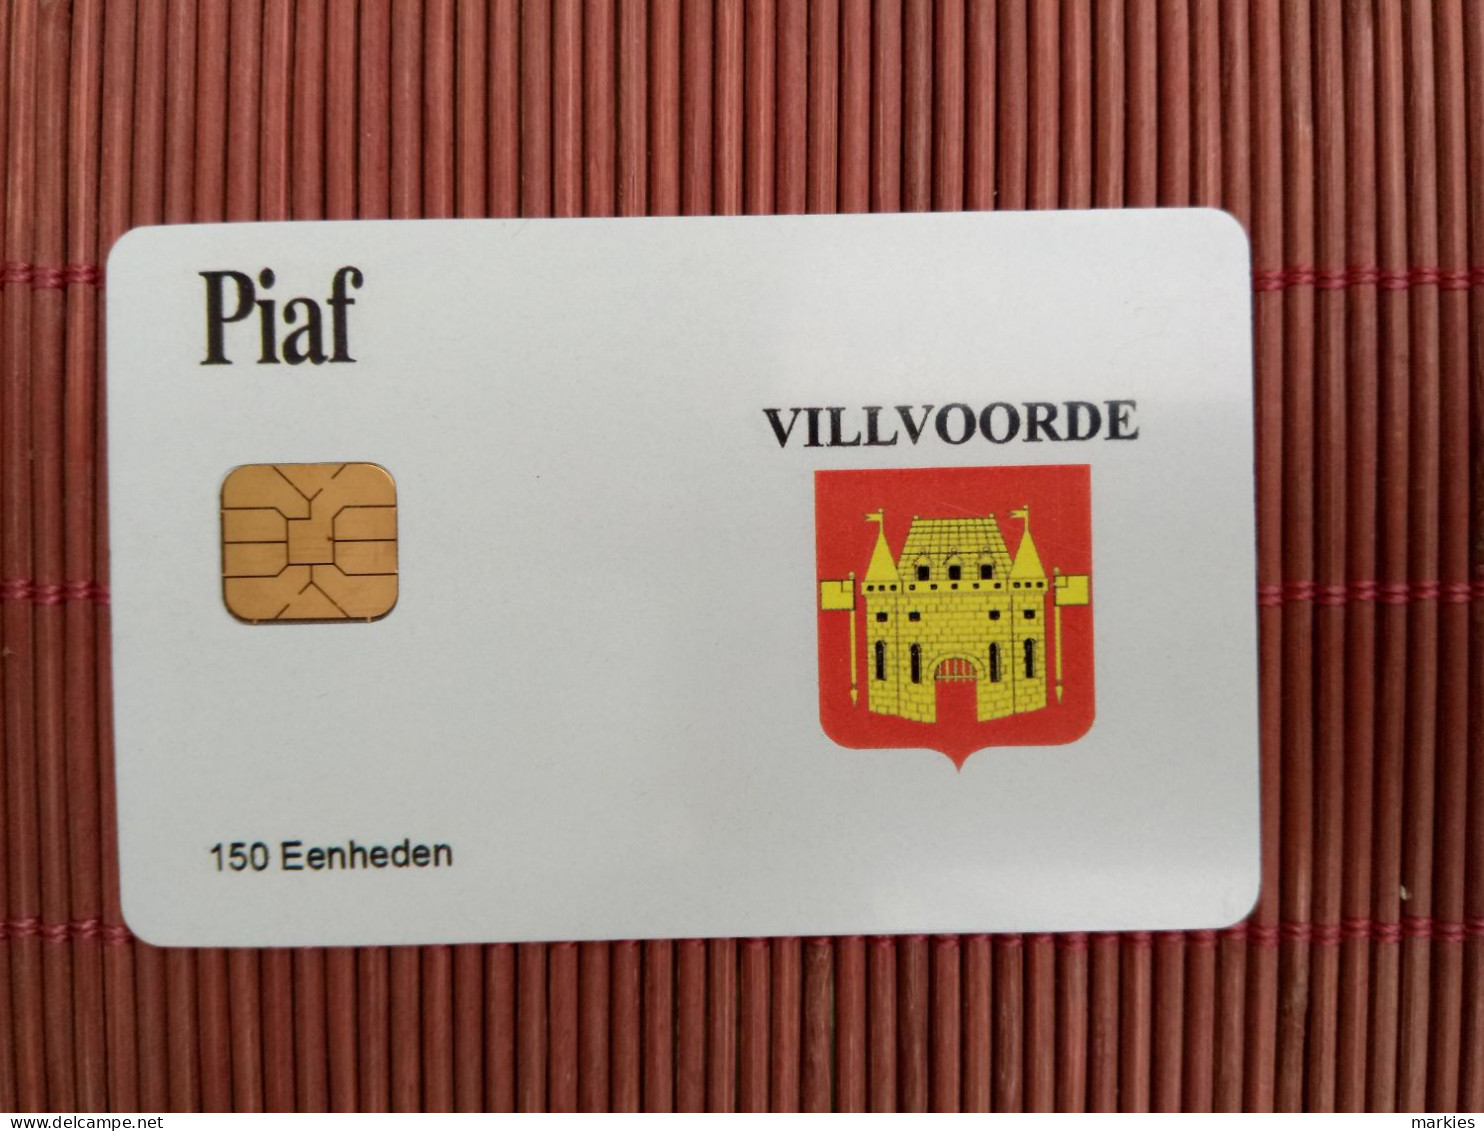 Carte Piaf  Villvoorde Ony 500 Ex Made 2 Photos Used Rare - Tarjetas De Estacionamiento (PIAF)